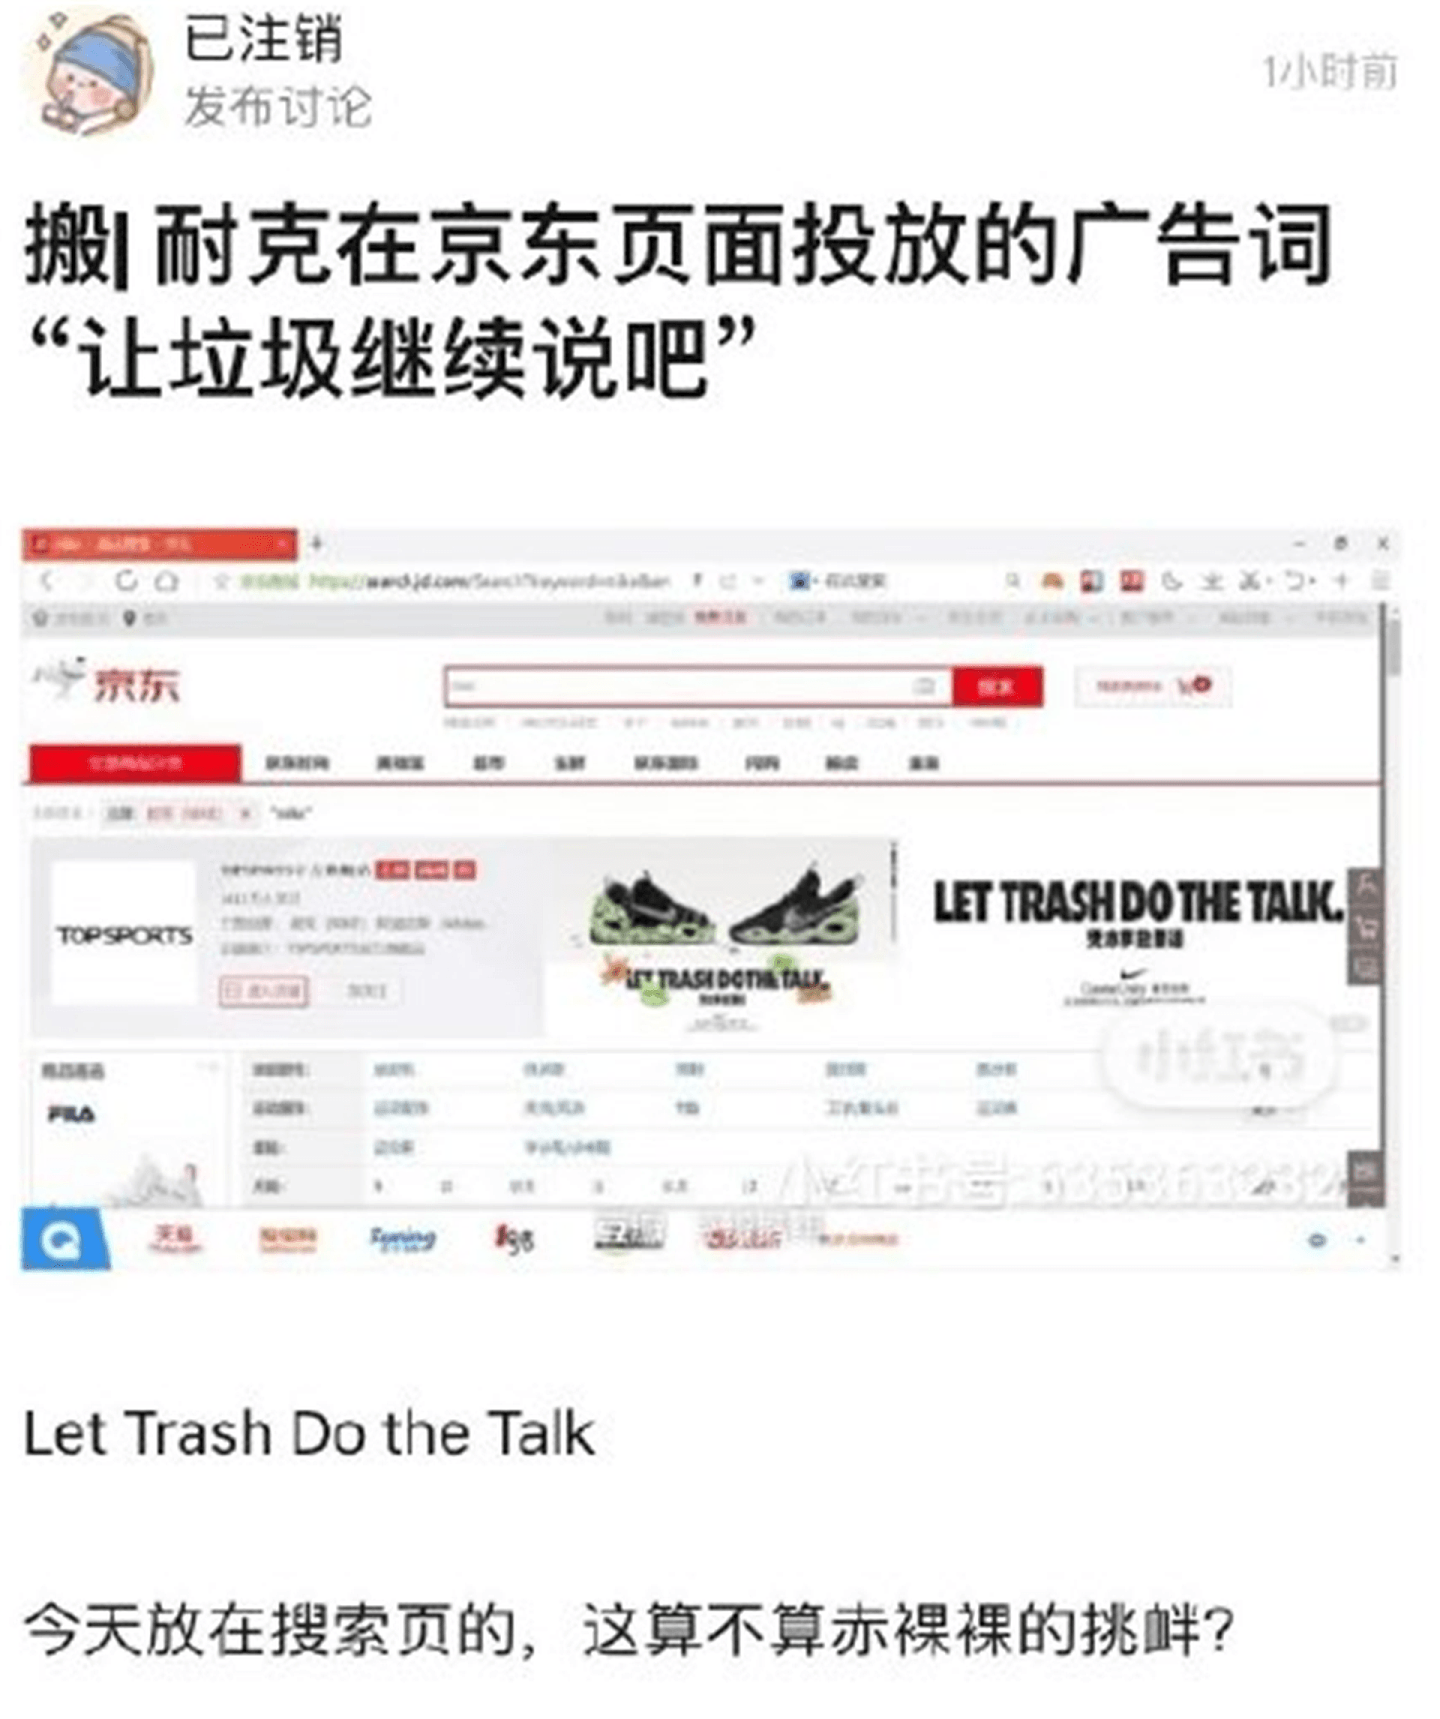 中国网购平台京东上，耐克官方店铺的标语“Let Trash do the Talk”（凭本事放狠话）惹议。（微博@诗酒流金）